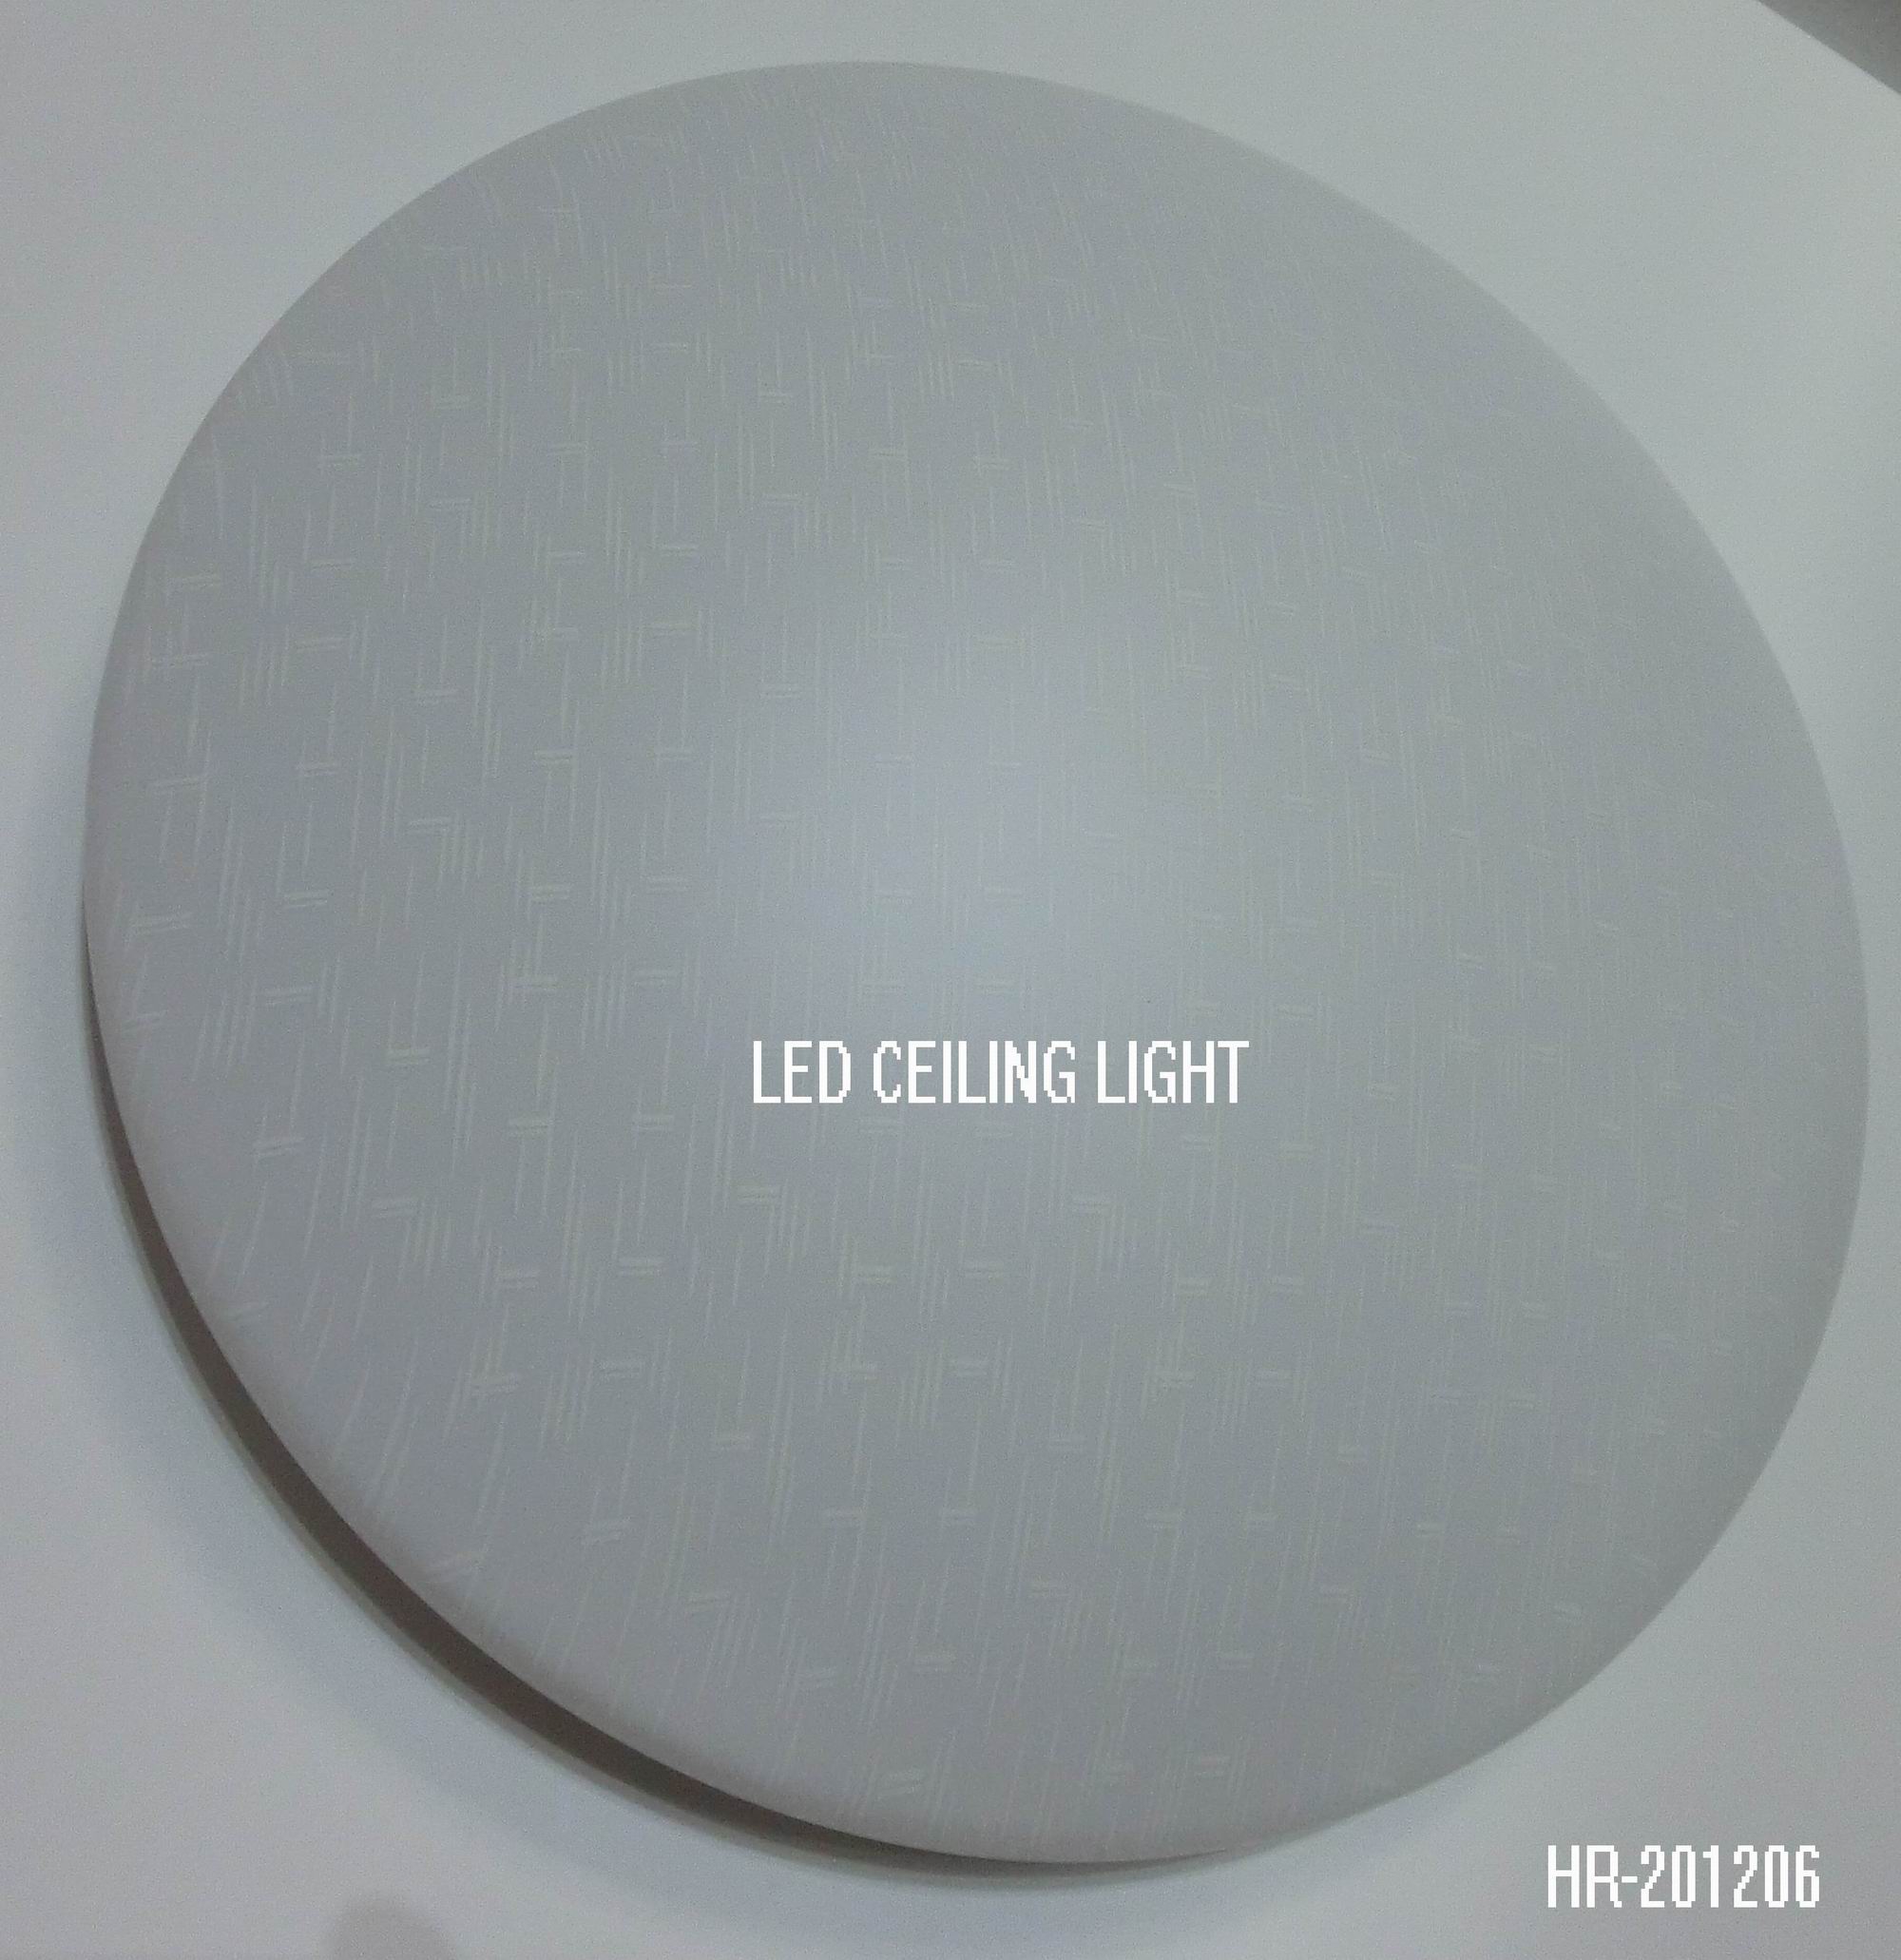 LED CEILING LIGHT HR-201206